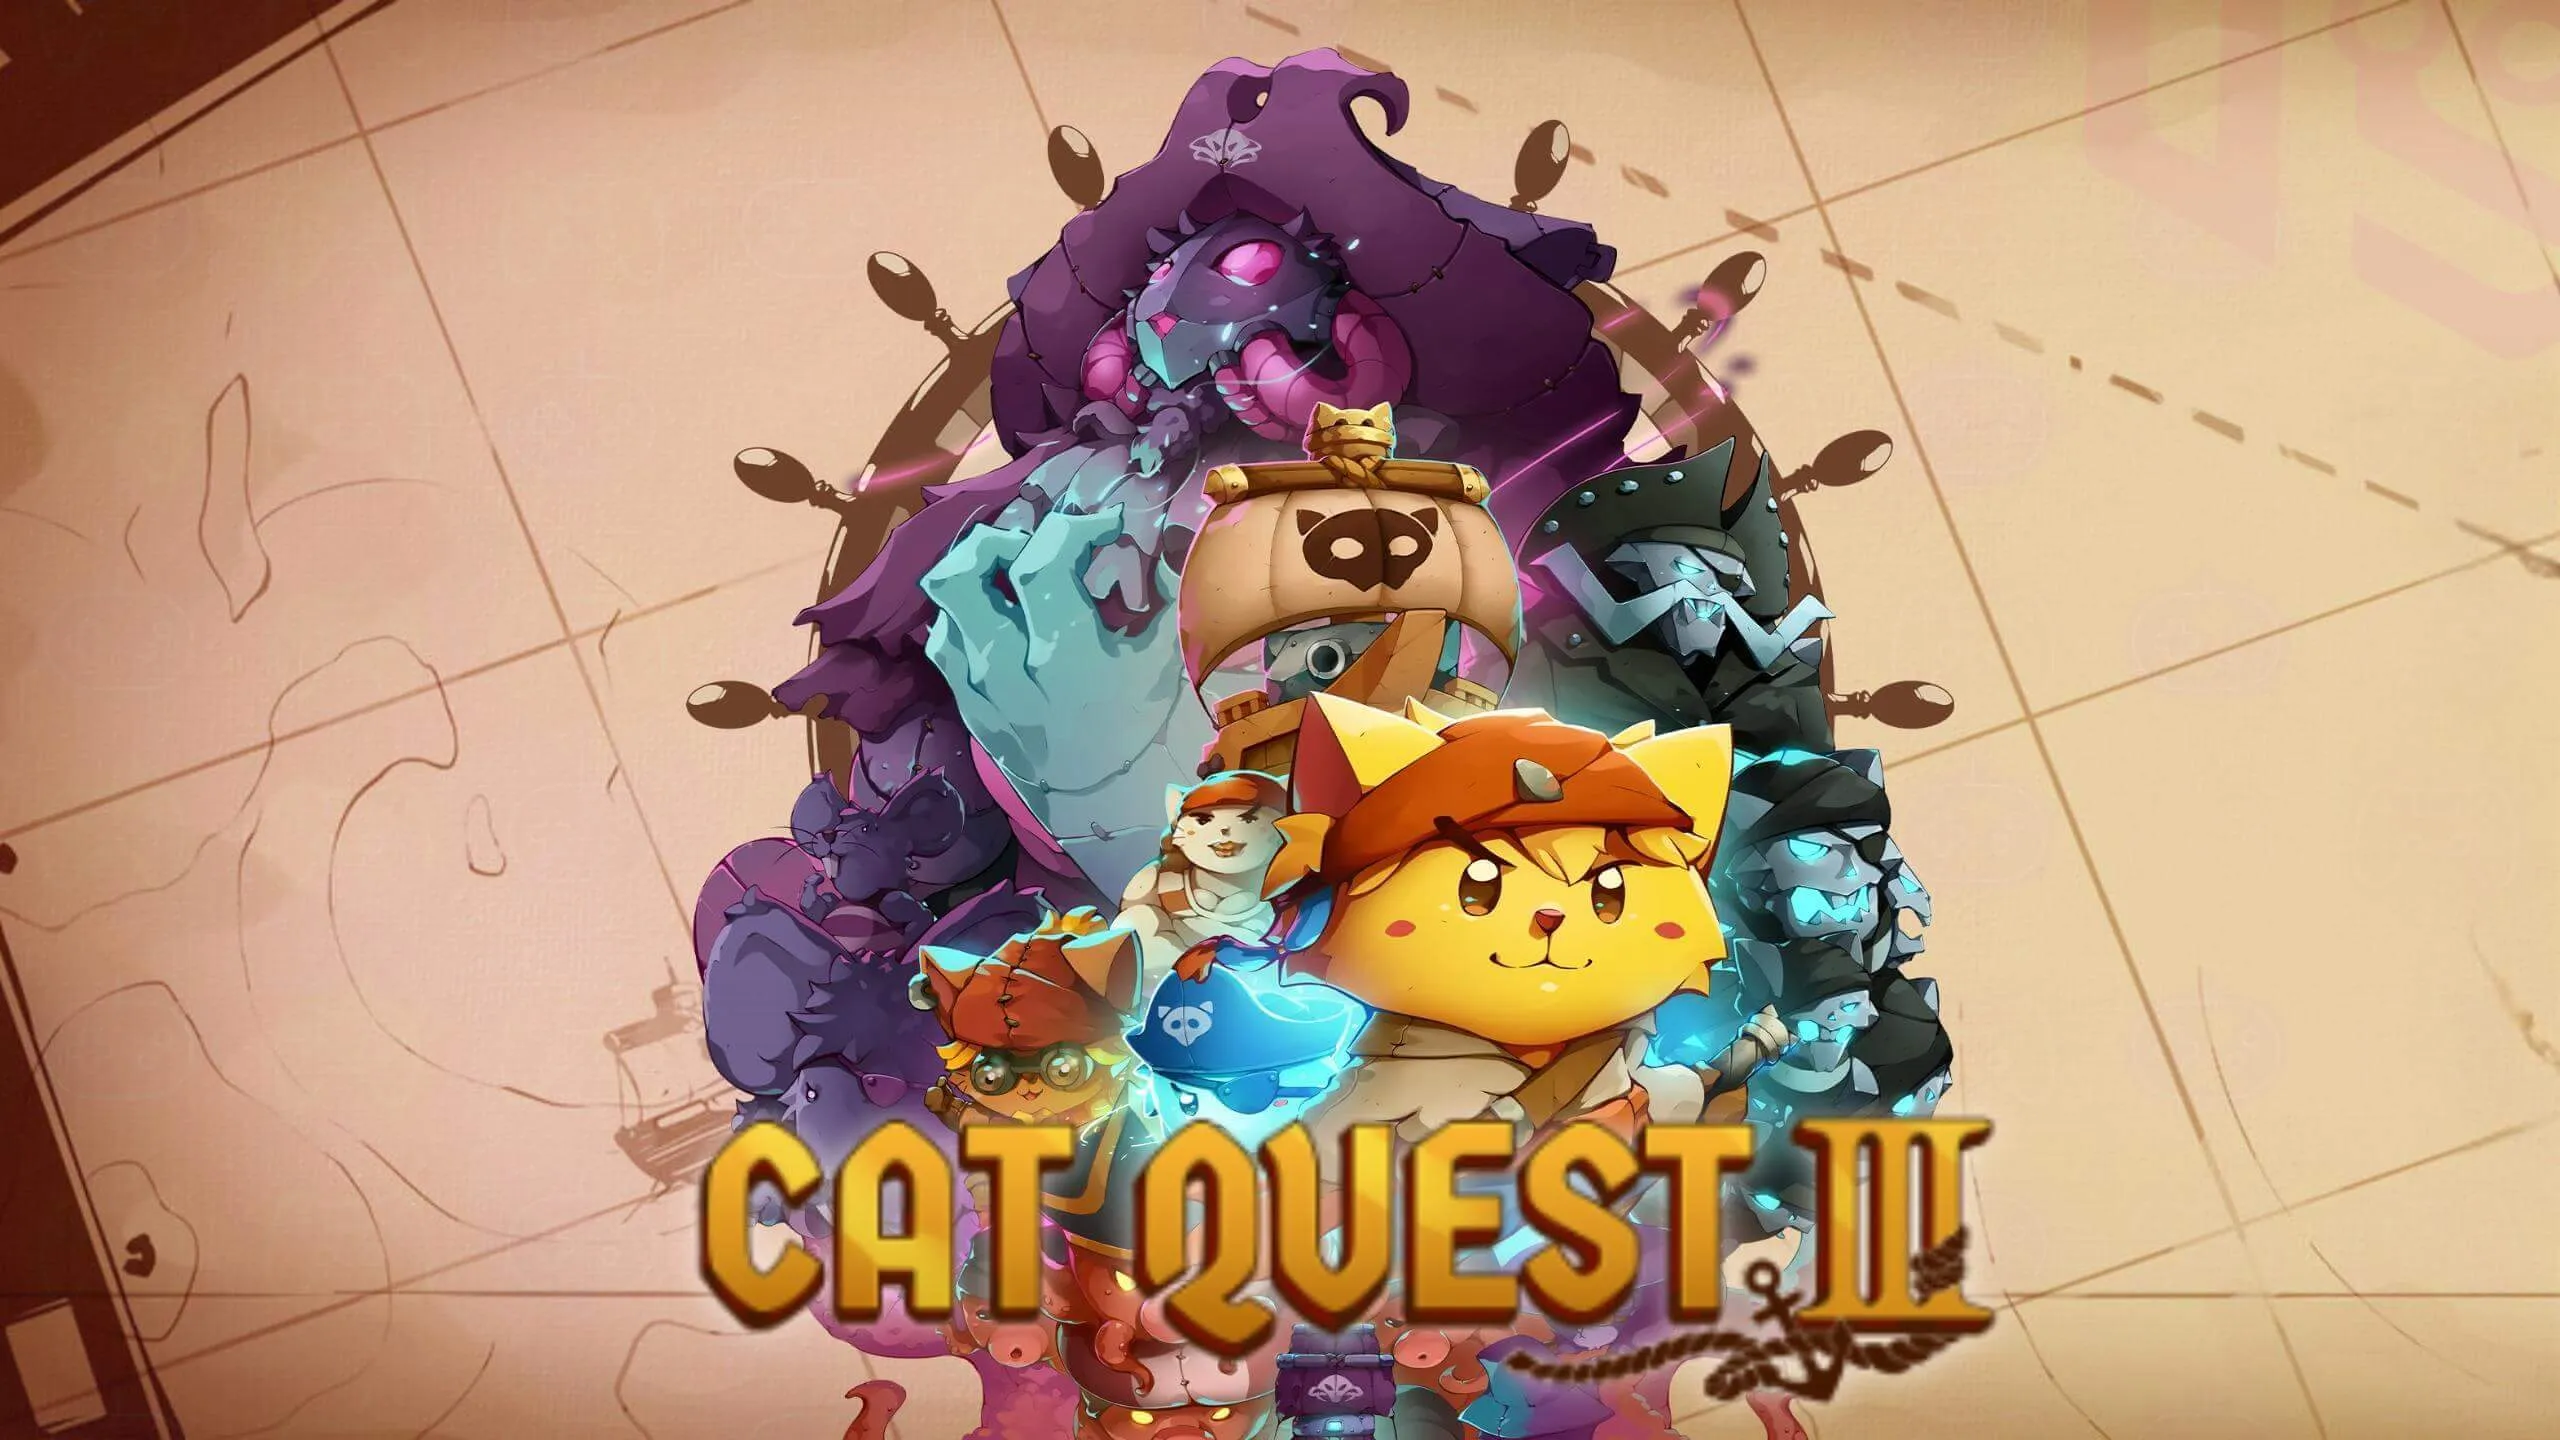 Cat Quest 3 key art